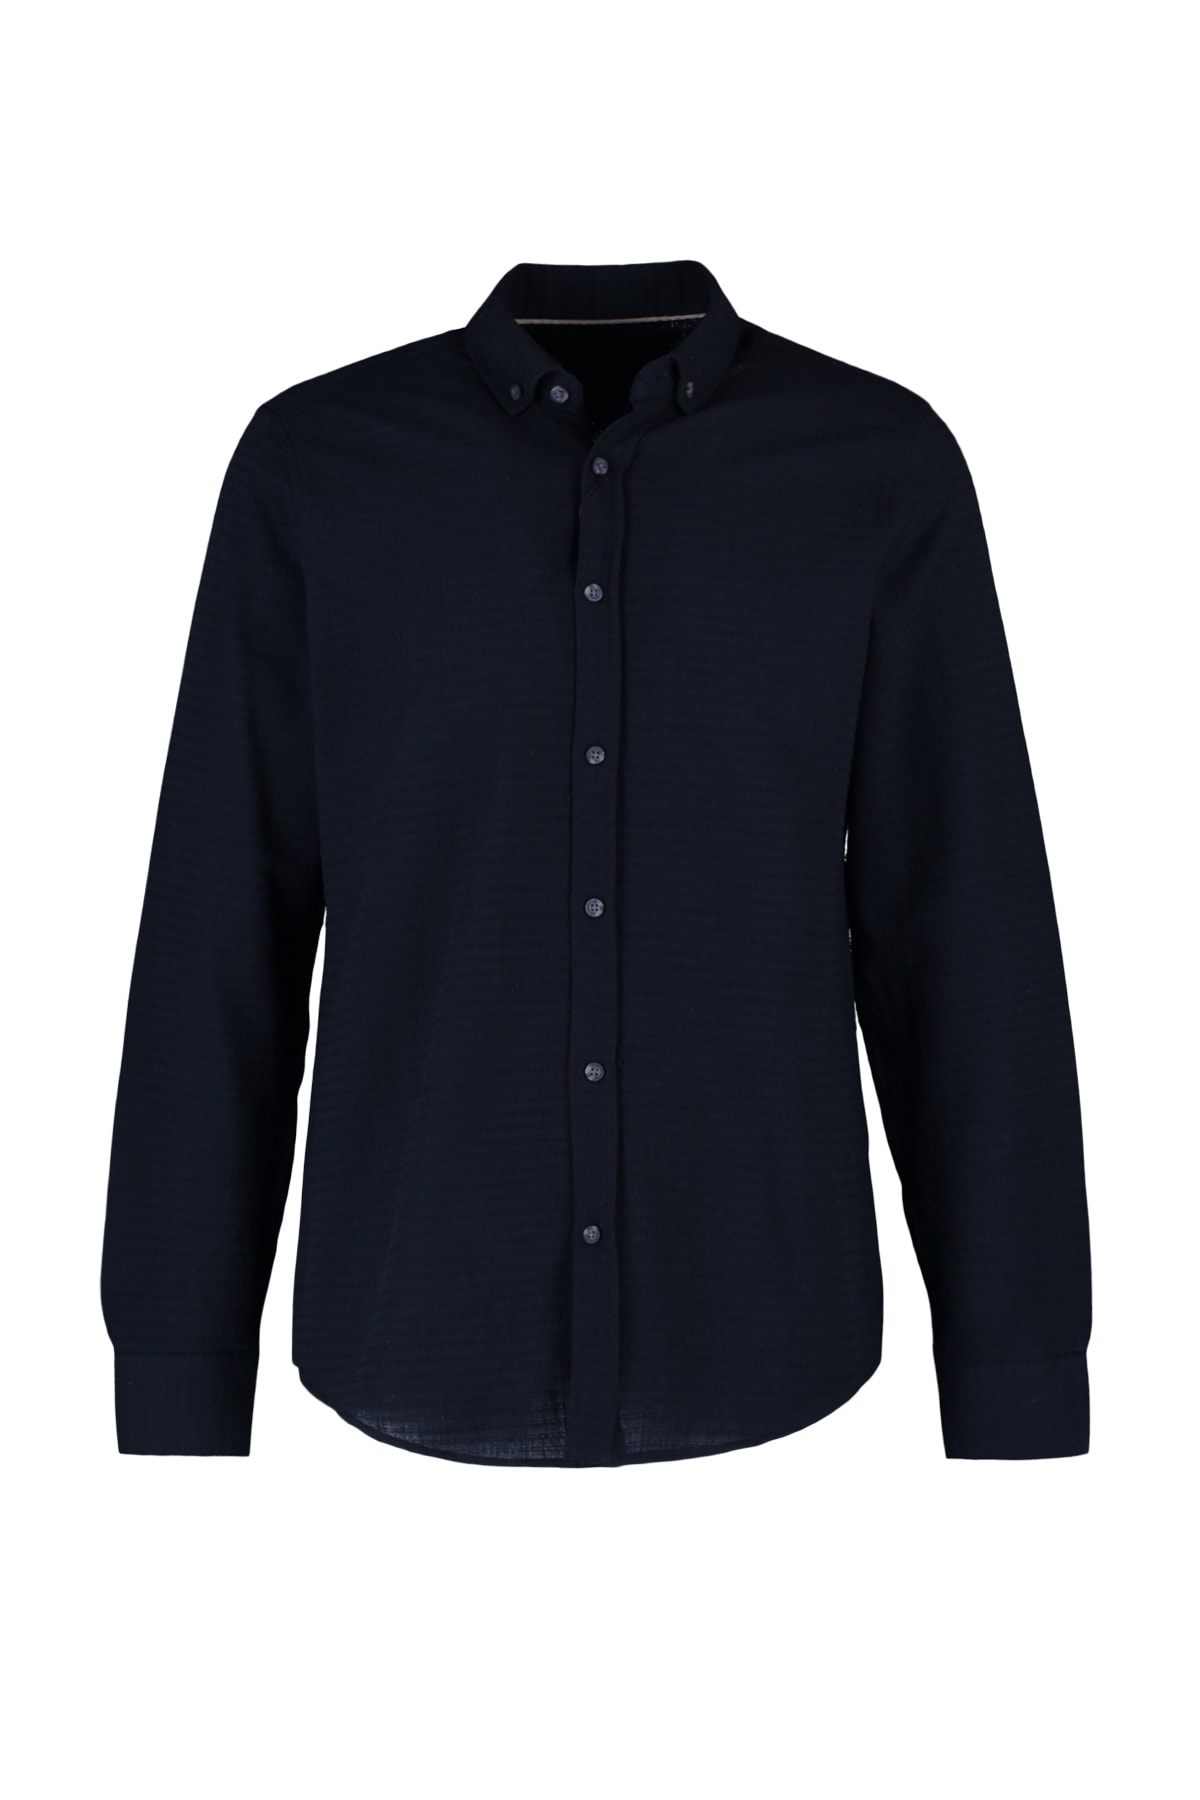 Trendyol Collection Hemd Schwarz Slim Fit Fast ausverkauft